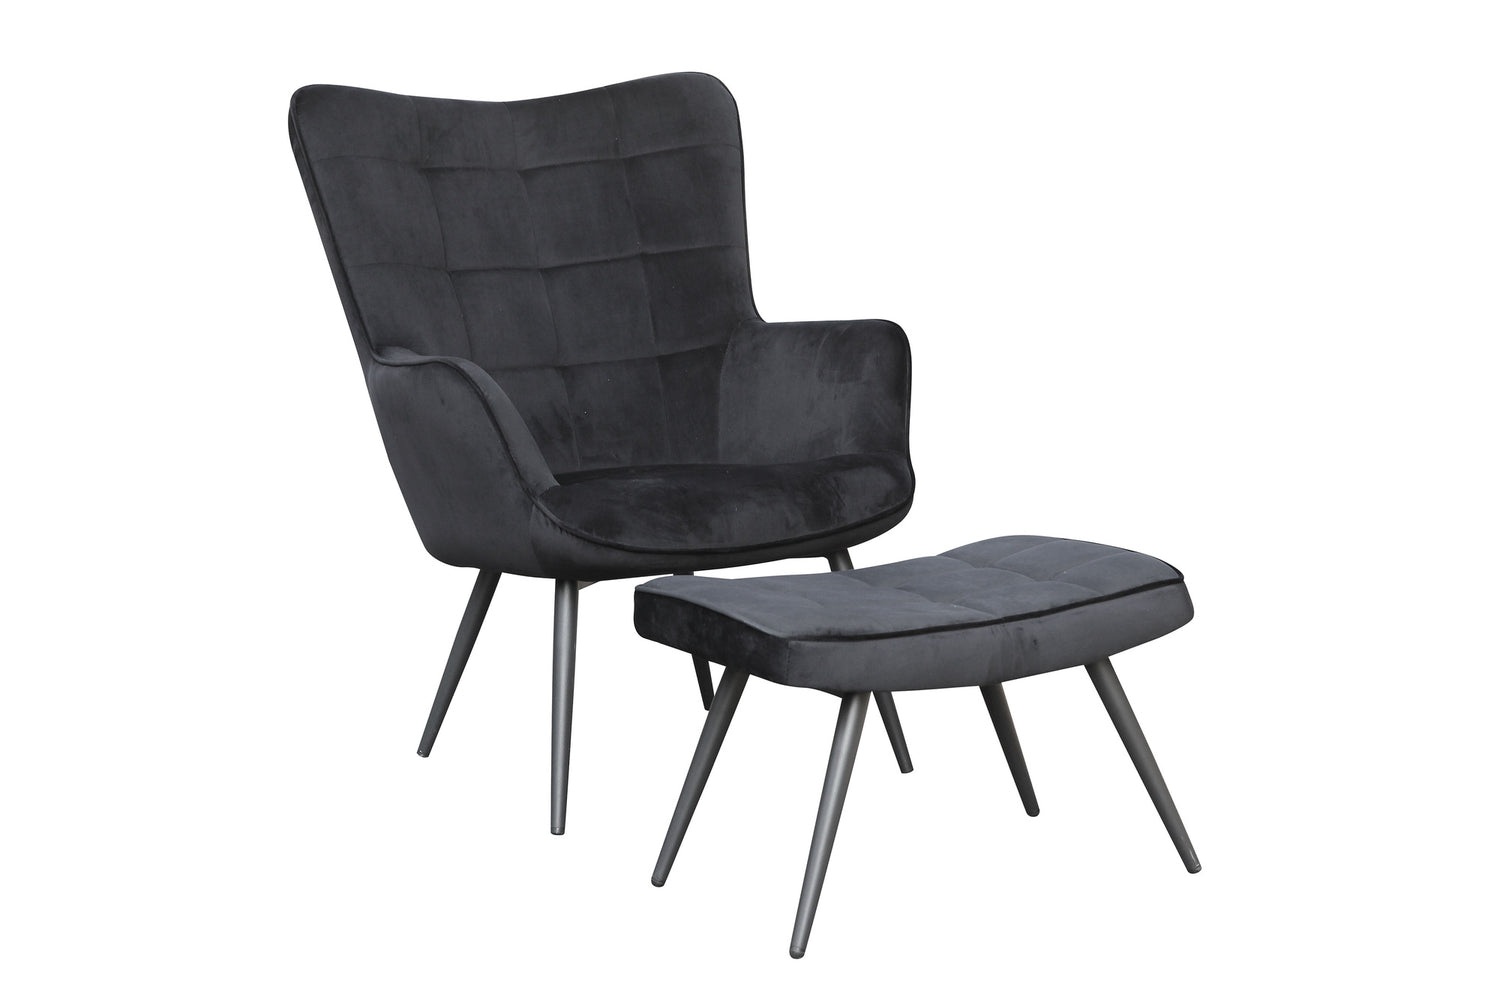 UTA Sessel, Gestell in schwarz, in – grün schwarz, sandfarben byLIVING grau, oder